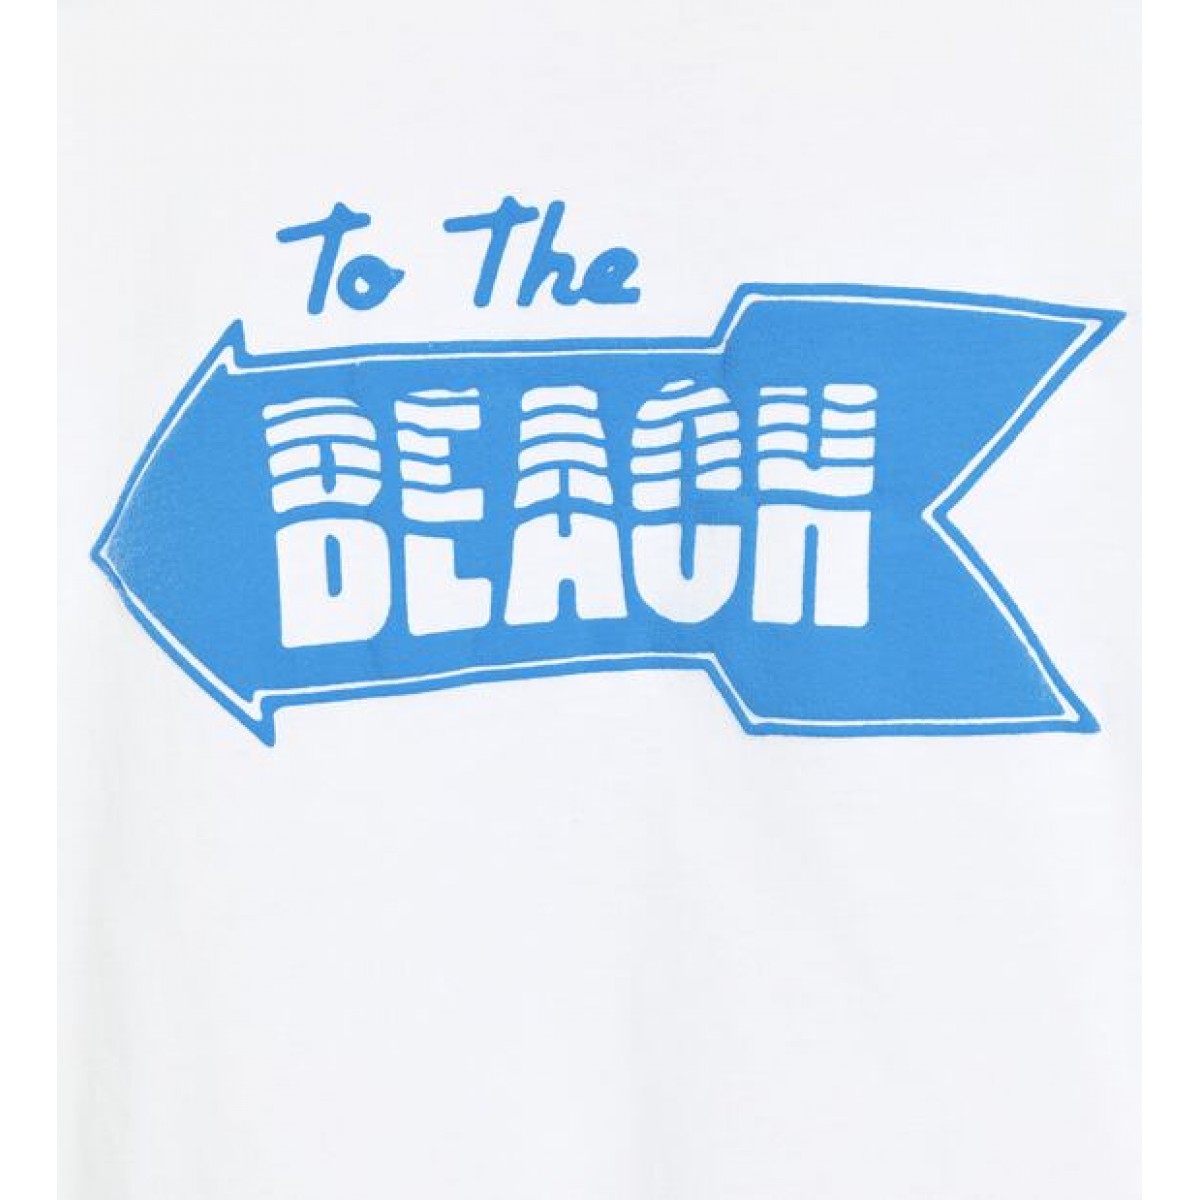 Zara To The Beach' T-Shirt